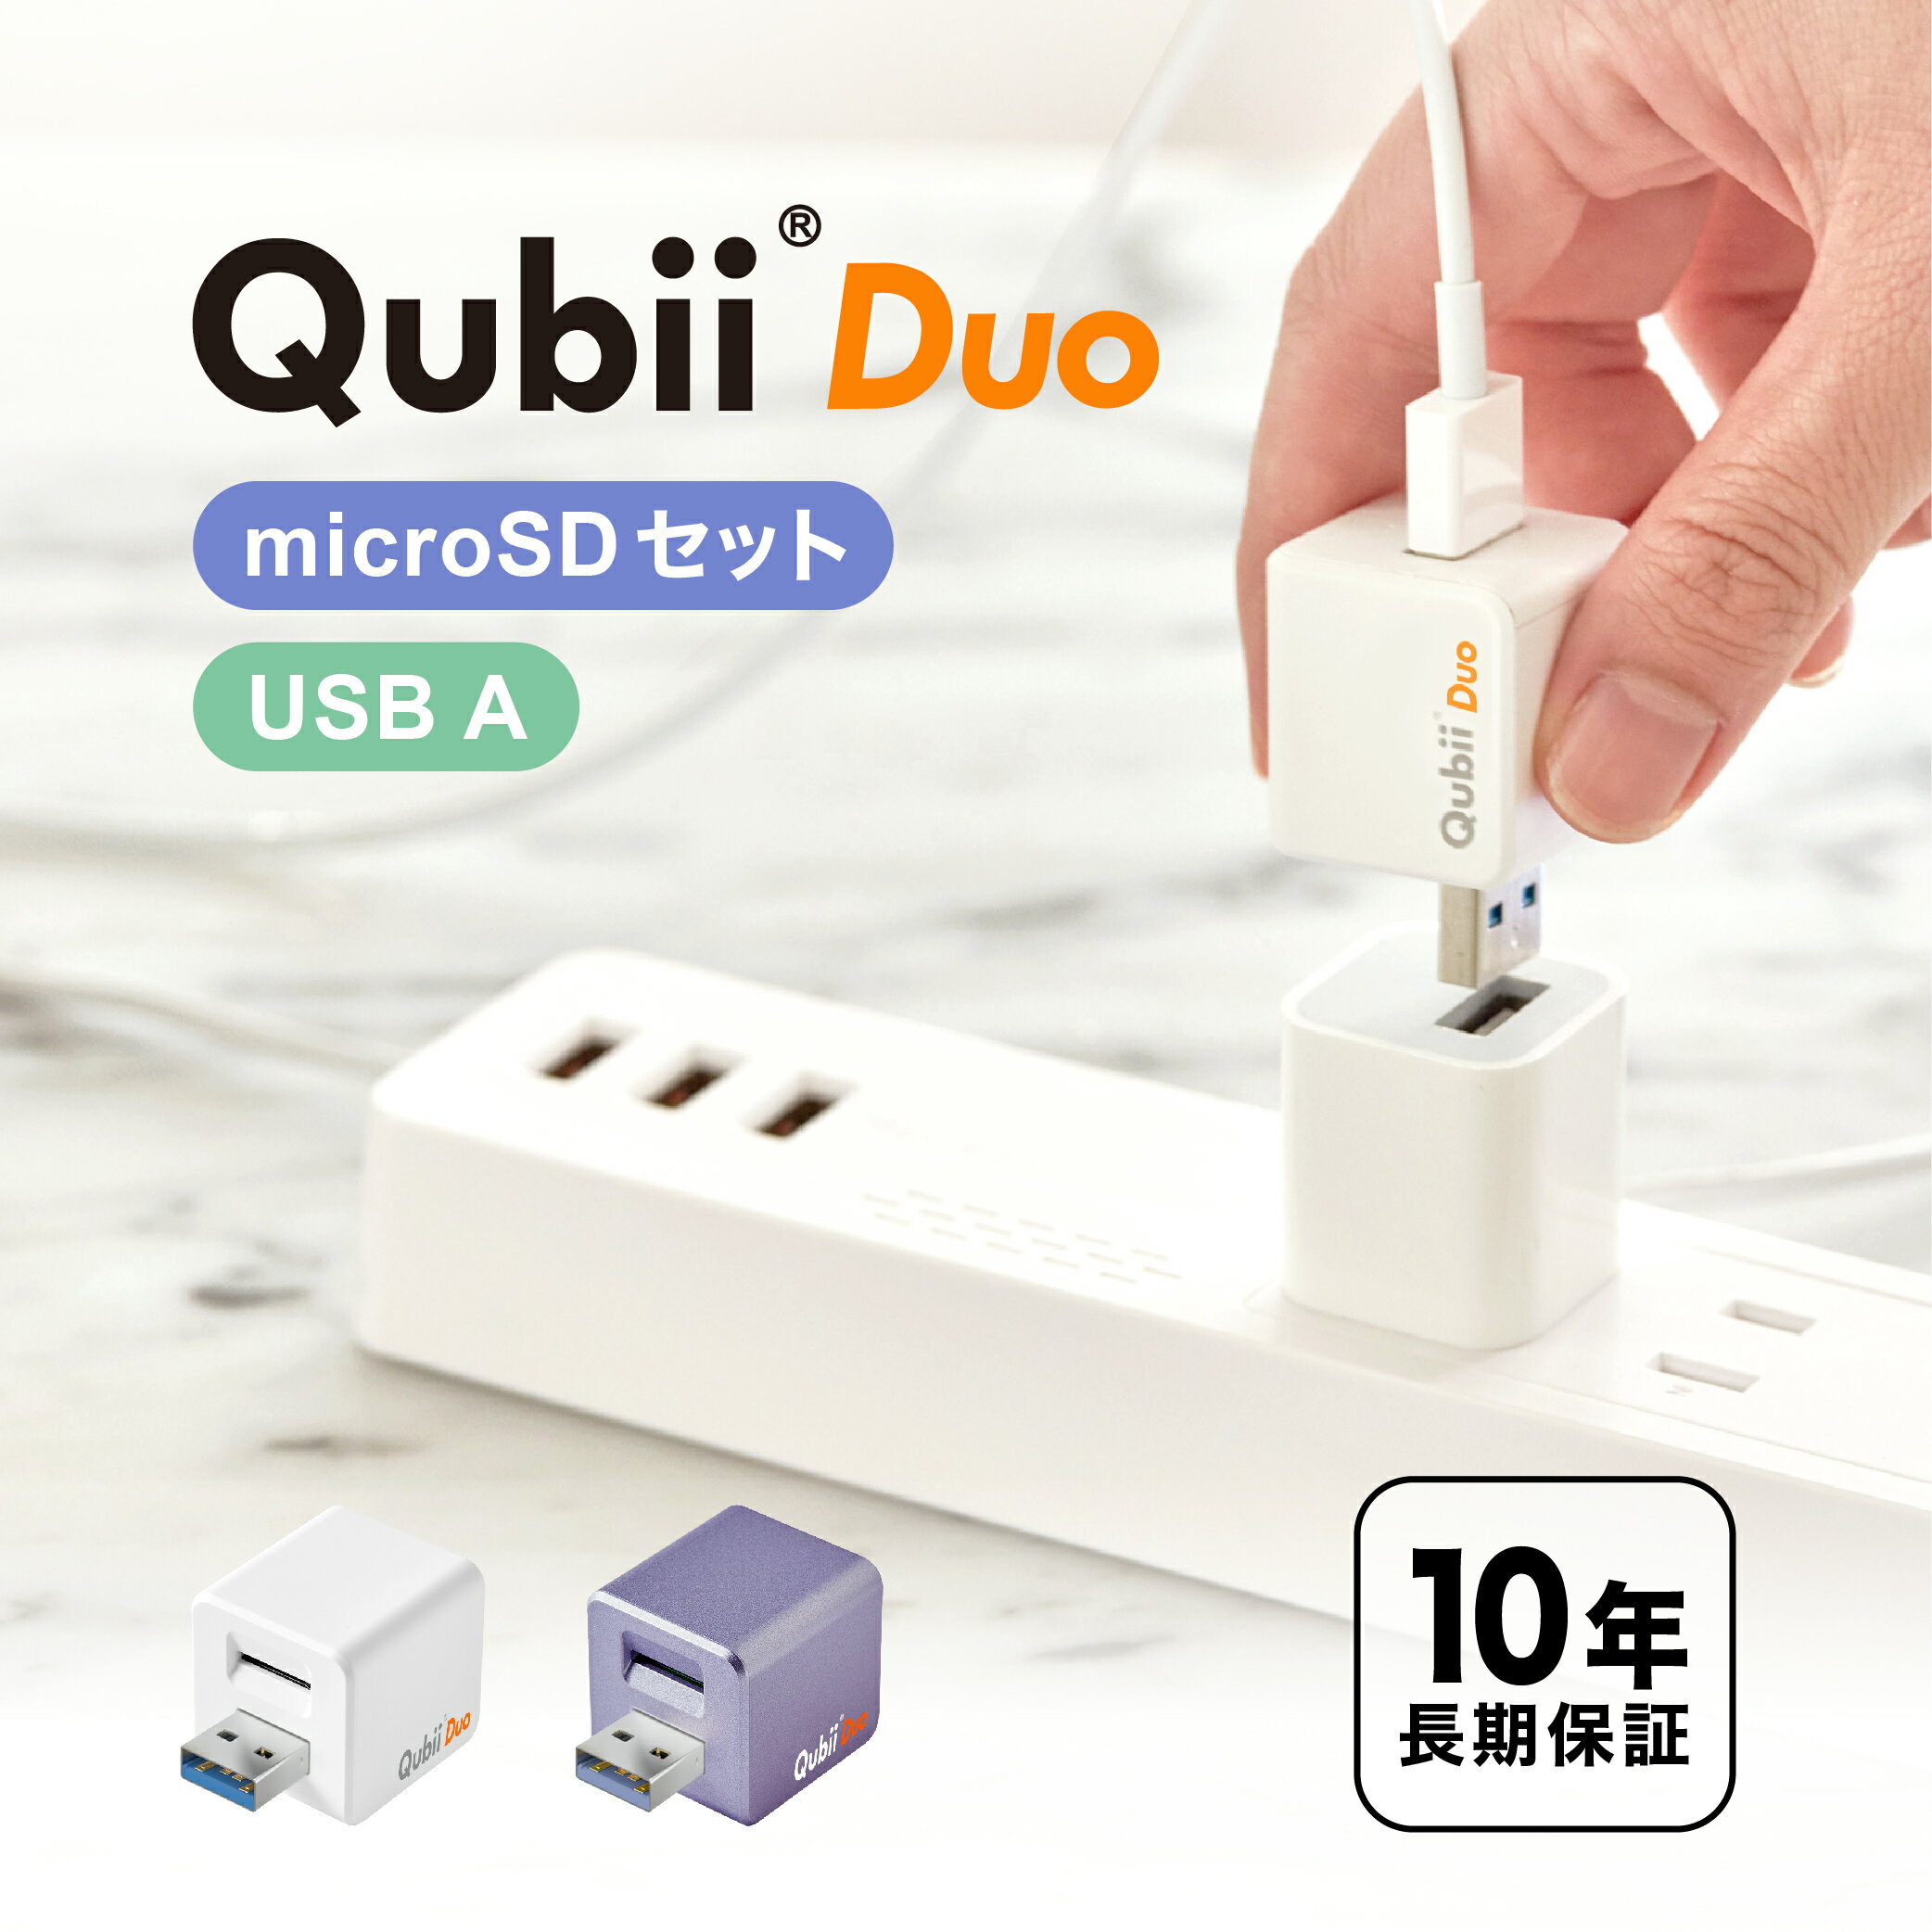  メーカー10年保証 Qubii Duo USB-A タイプ 充電しながら自動バックアップ iphone バックアップ usbメモリ ipad android 容量不足解消 写真 動画 音楽 連絡先 SNS データ 移行 SDカードリーダー 機種変更 MFi認証 USB-Aタイプ マクター Maktar